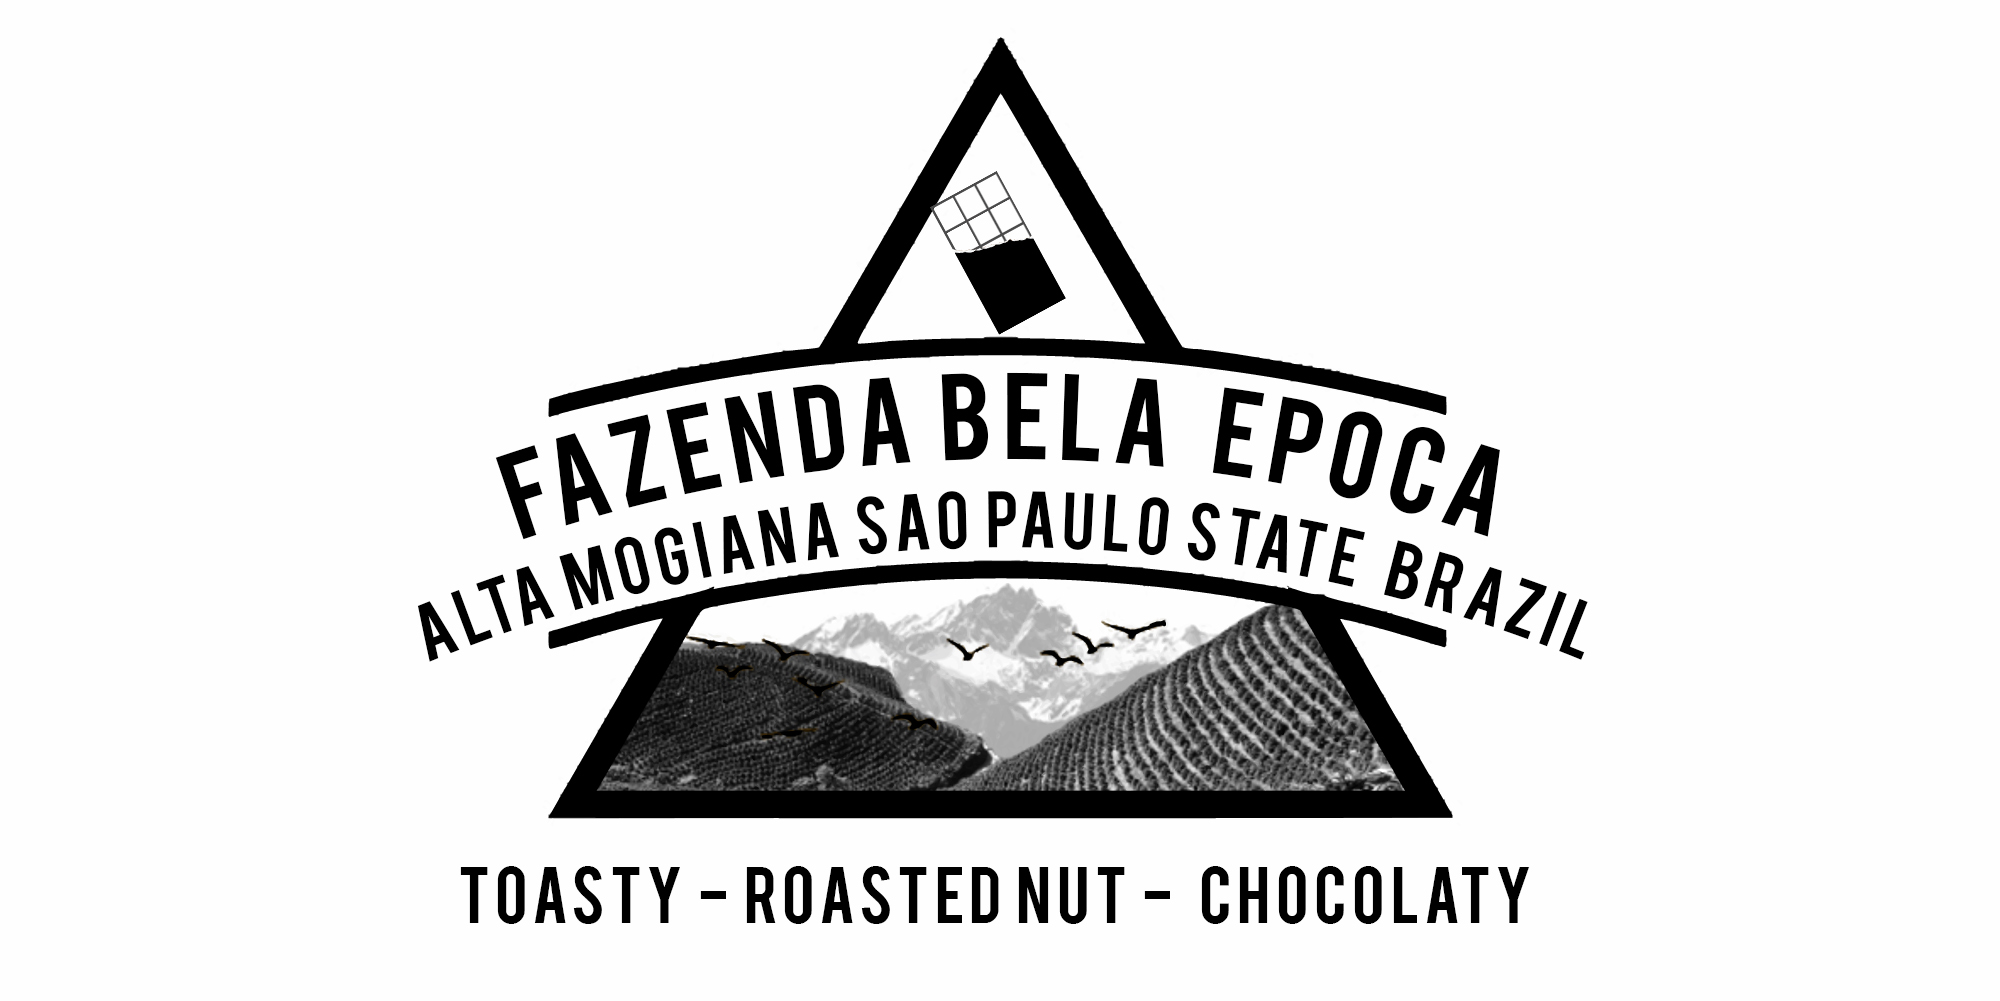 BRAZIL BELA EPOCA FARM COFFEE